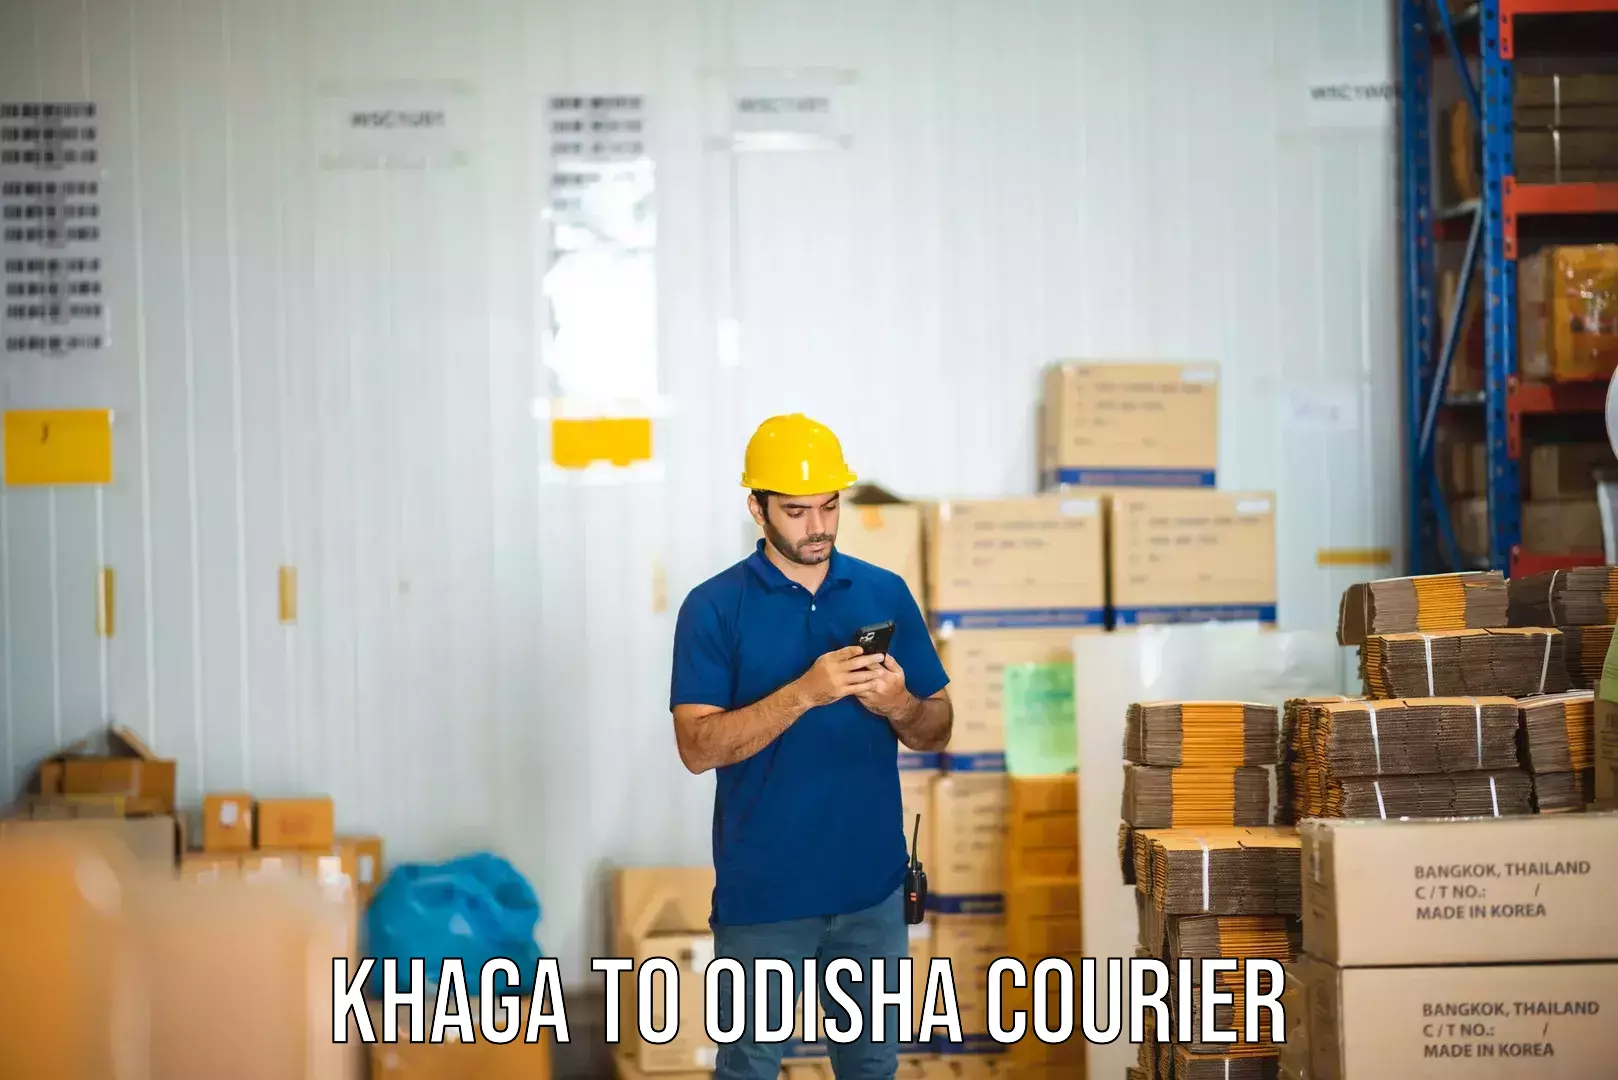 Specialized courier services Khaga to Polasara